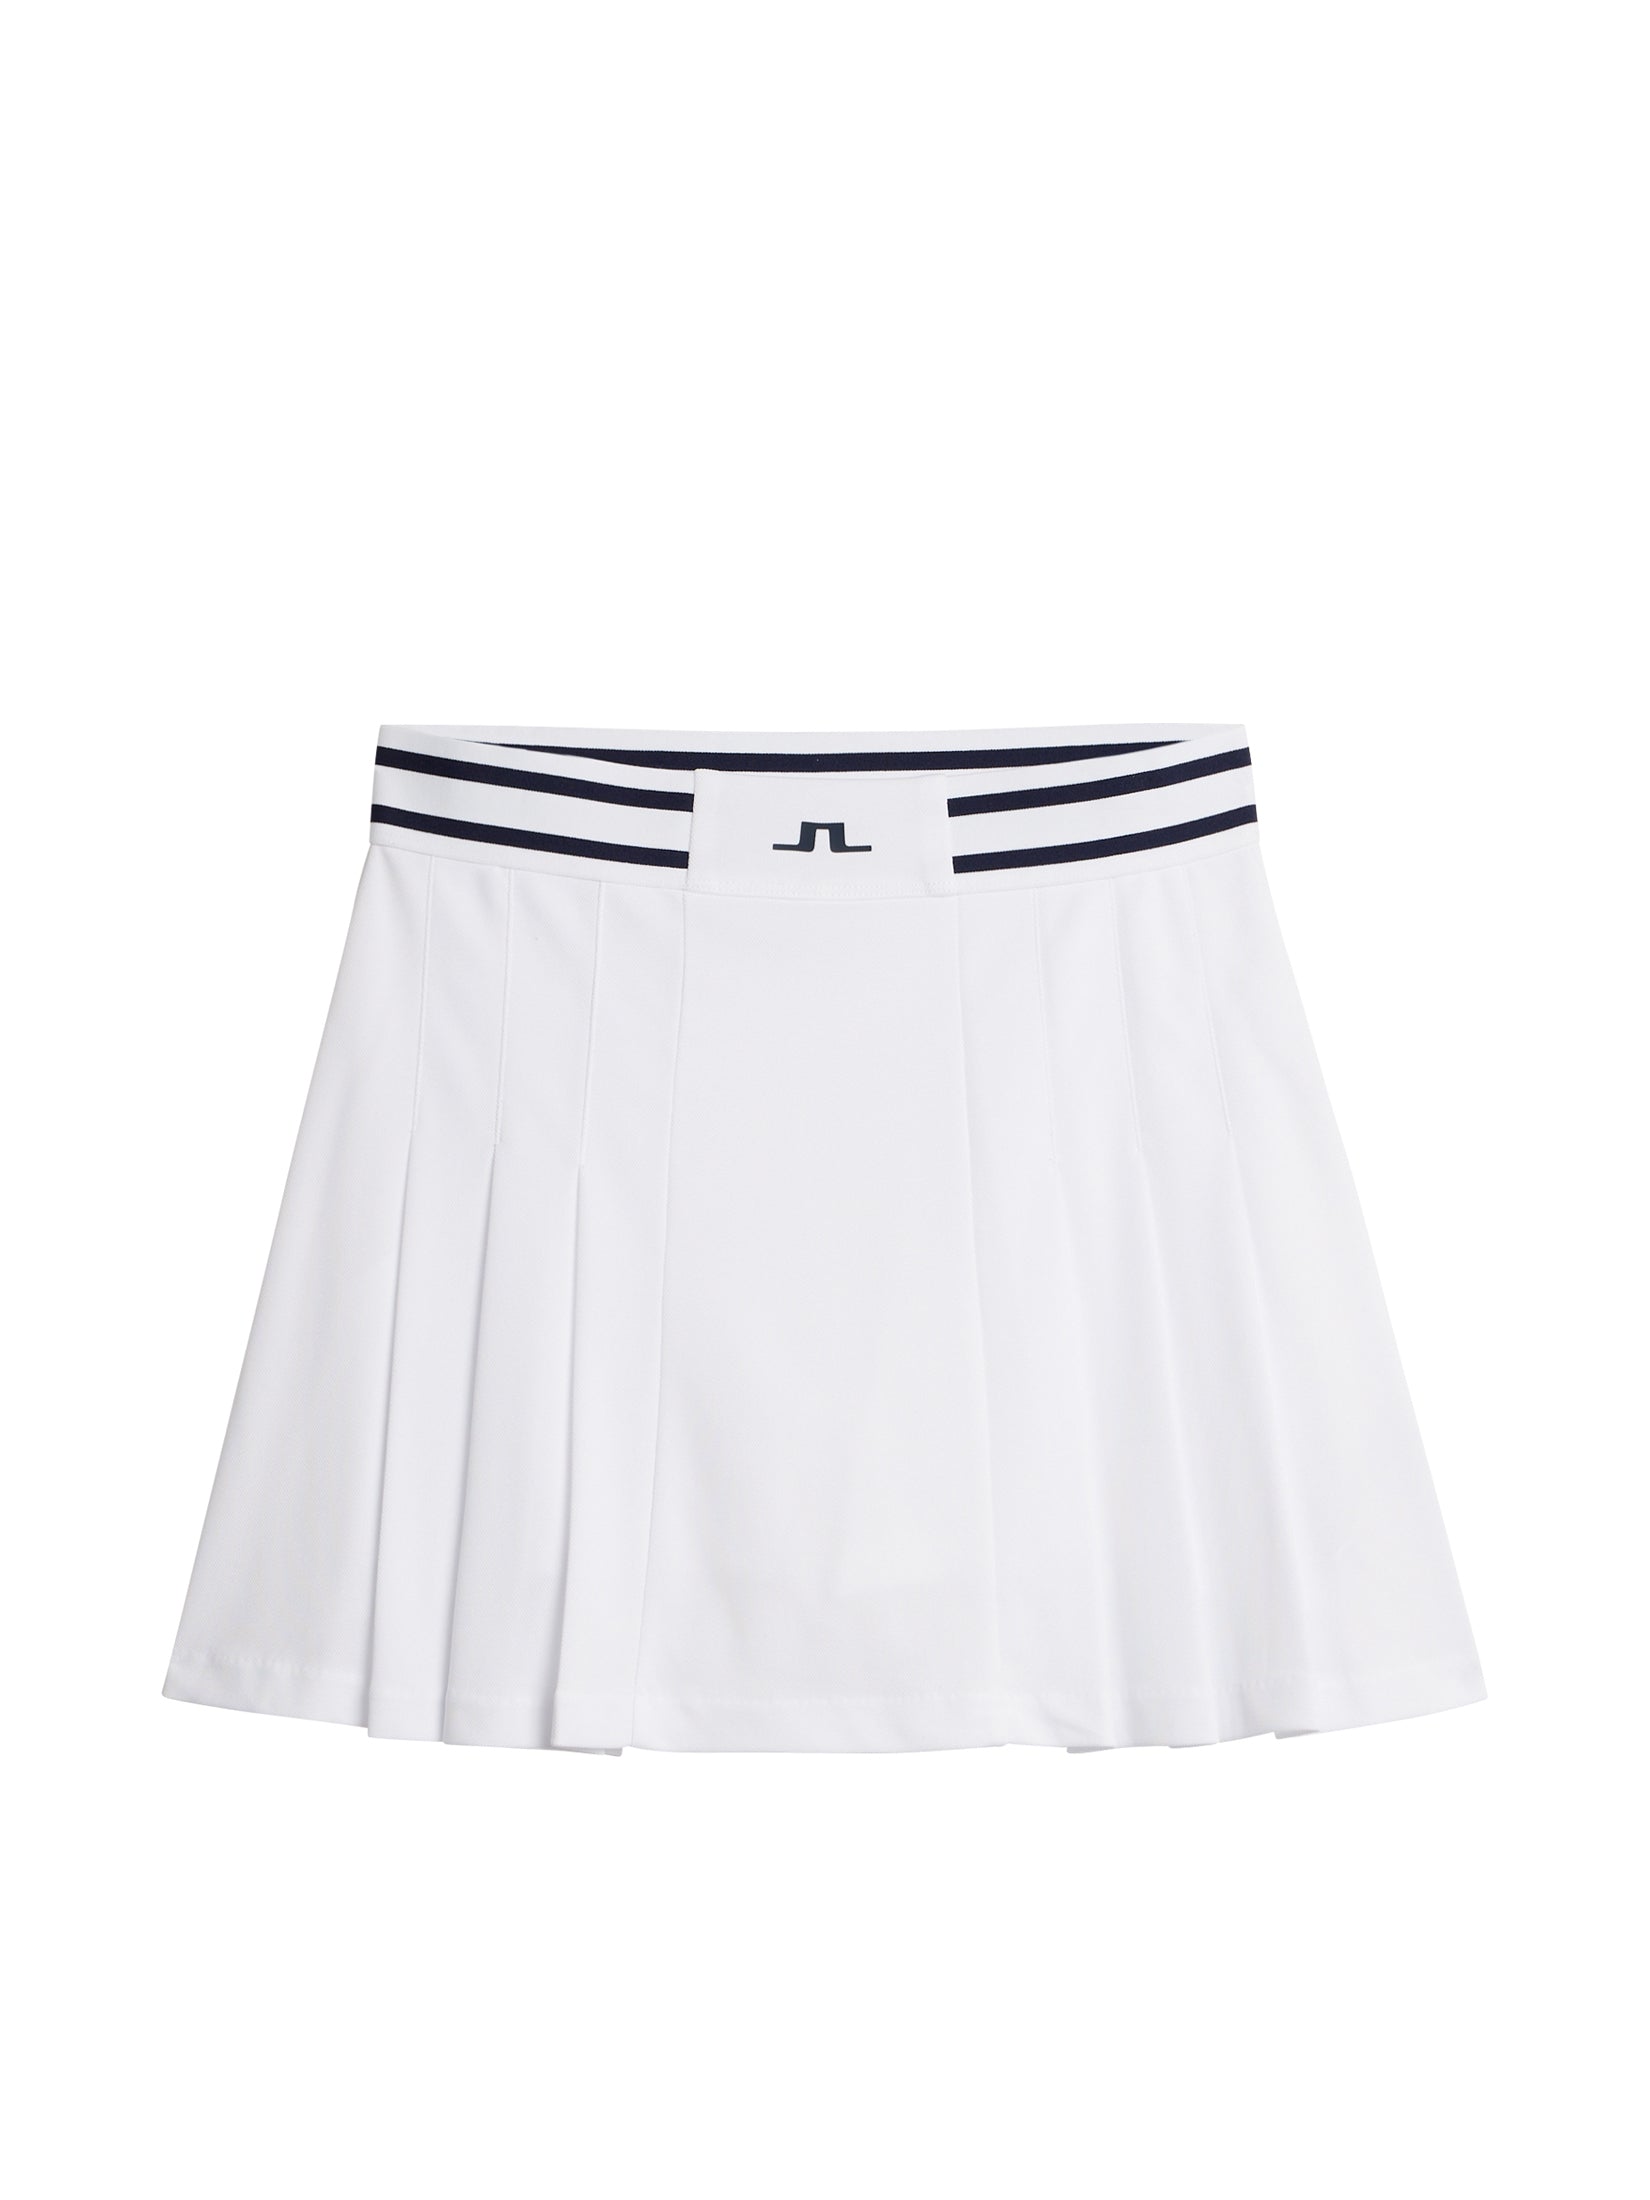 Harlow Skirt